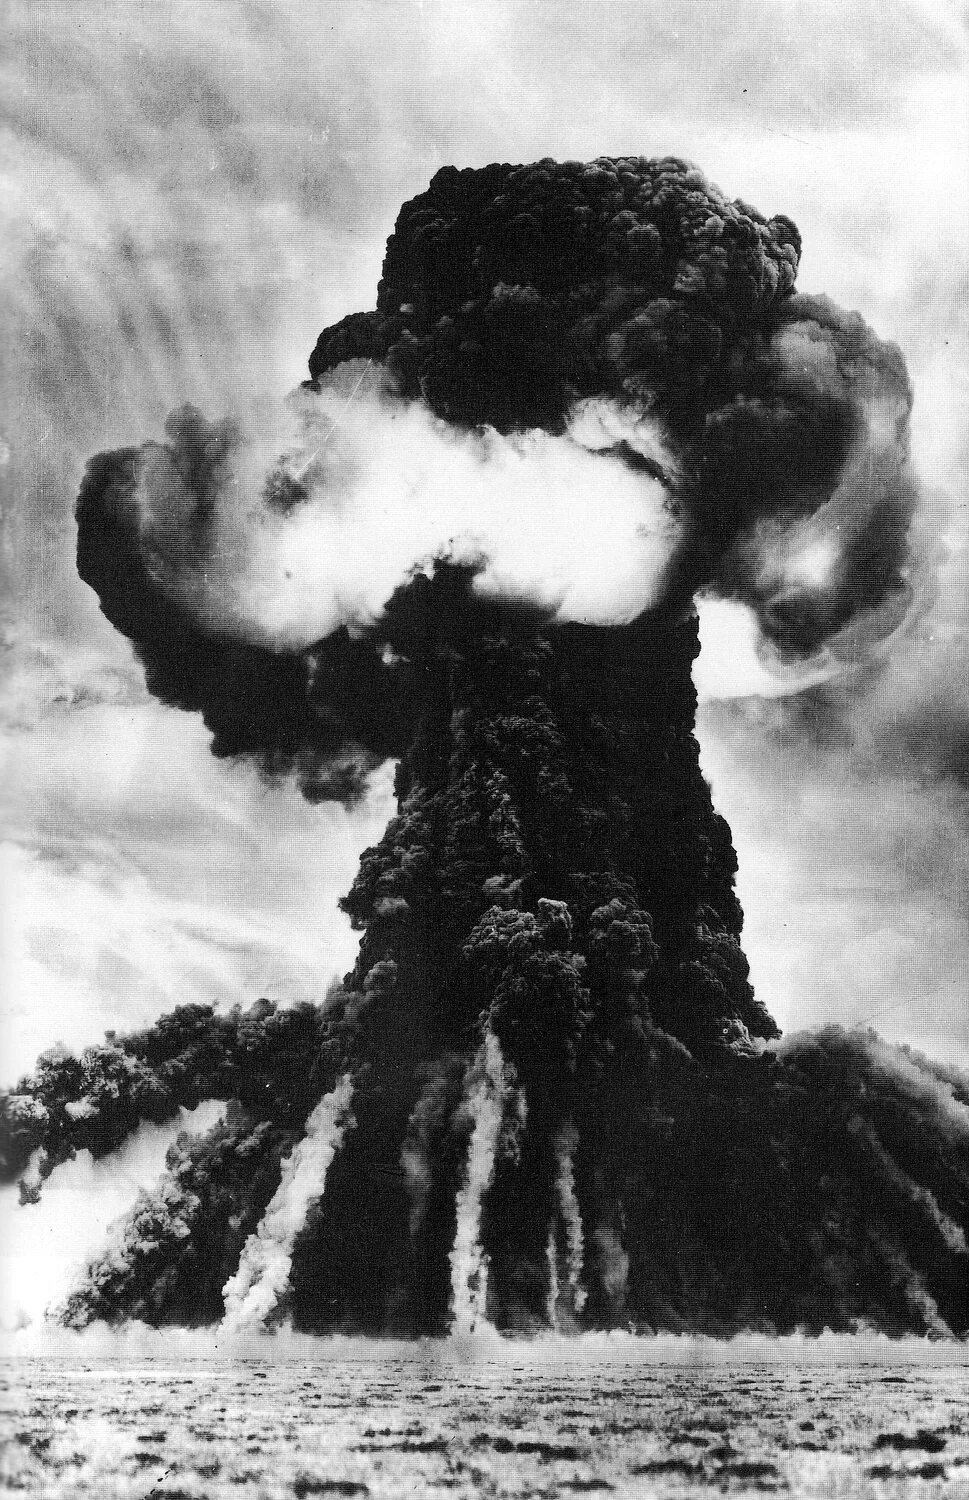 Ссср испытание. Семипалатинск полигон испытания первой атомной бомбы. Атомный взрыв Семипалатинск. Семипалатинский ядерный полигон 1949. Семипалатинский полигон взрыв.